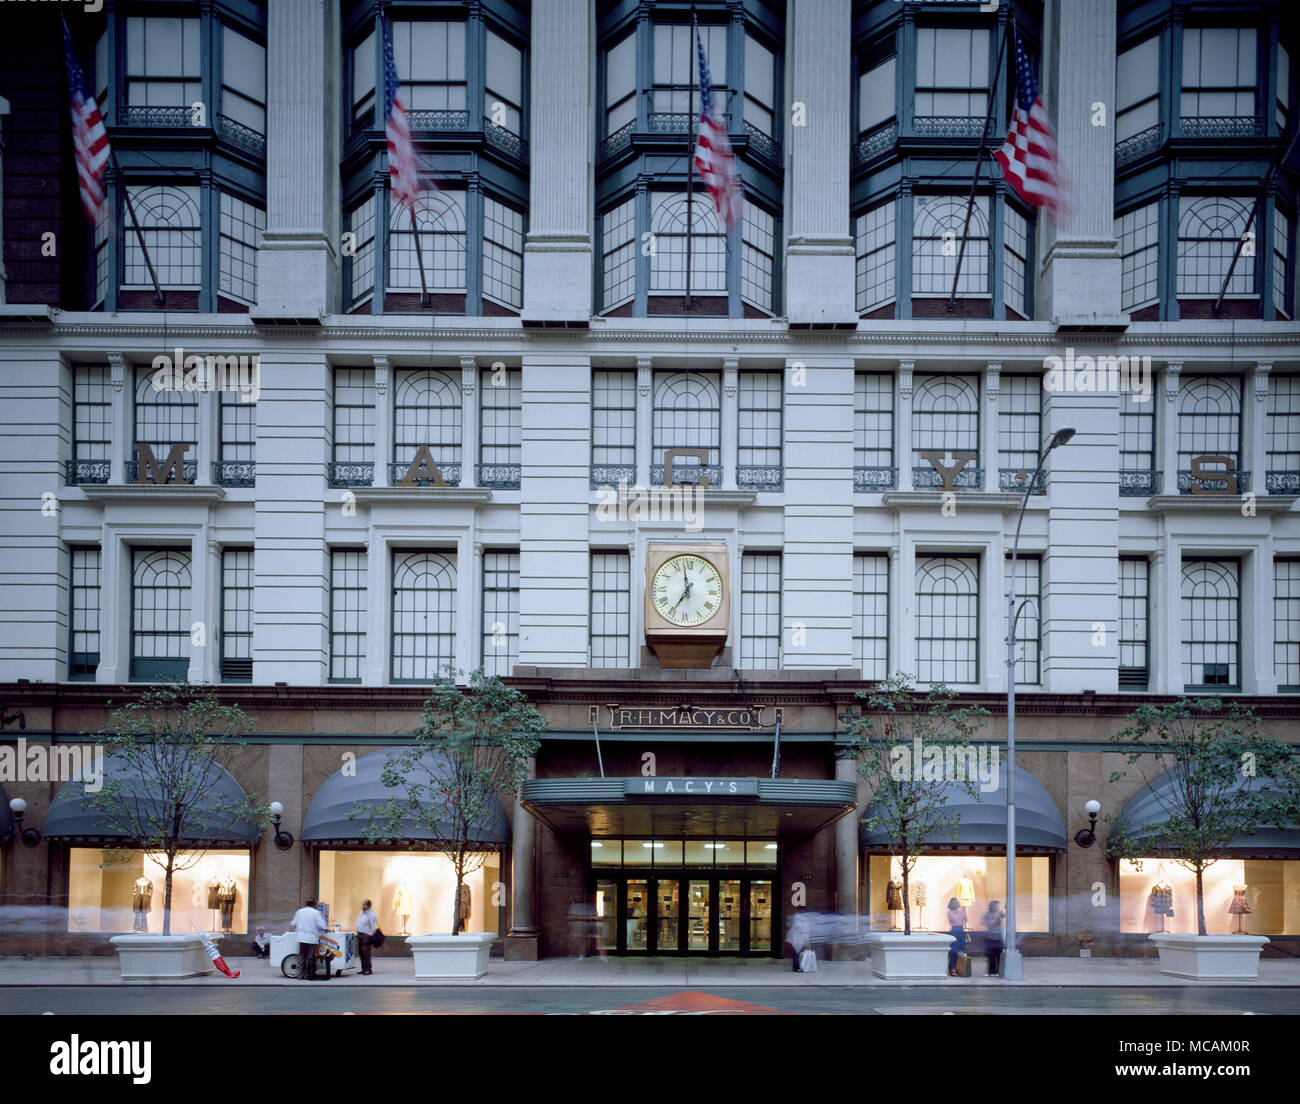 Macy's Herald Square, ursprünglich als R. H. Macy und Company Store, bekannt ist, ist das Flaggschiff der Macy's Department Stores, am Herald Square in Manhattan, New York City entfernt. 2,2 Millionen Quadratmeter des Gebäudes Füße (fast 205.000 Quadratmeter) machte es der weltweit grösste Kaufhaus von 1924 bis 2009. Ab 2011 wird der Speicher hat am Standort für 110 Jahre stand. Stockfoto